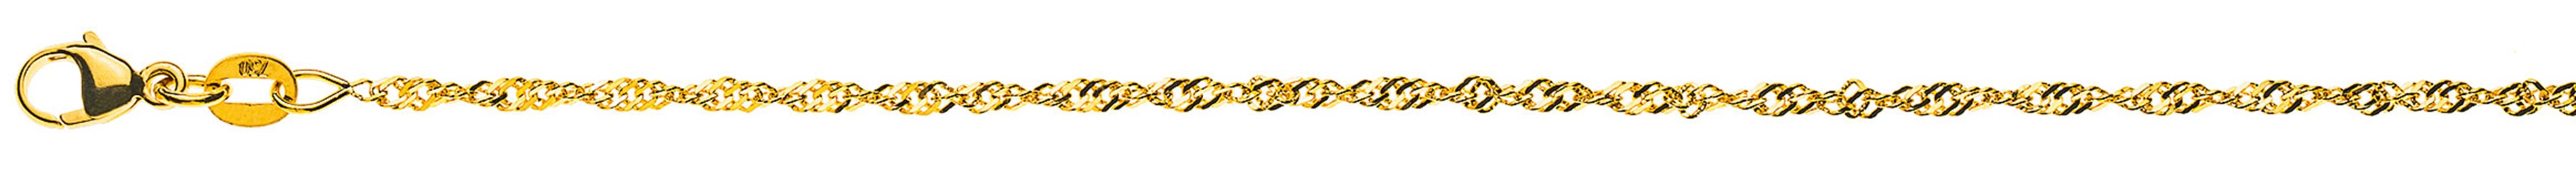 AURONOS Prestige Necklace Yellow Gold 18K Singapore Chain 60cm 1.9mm